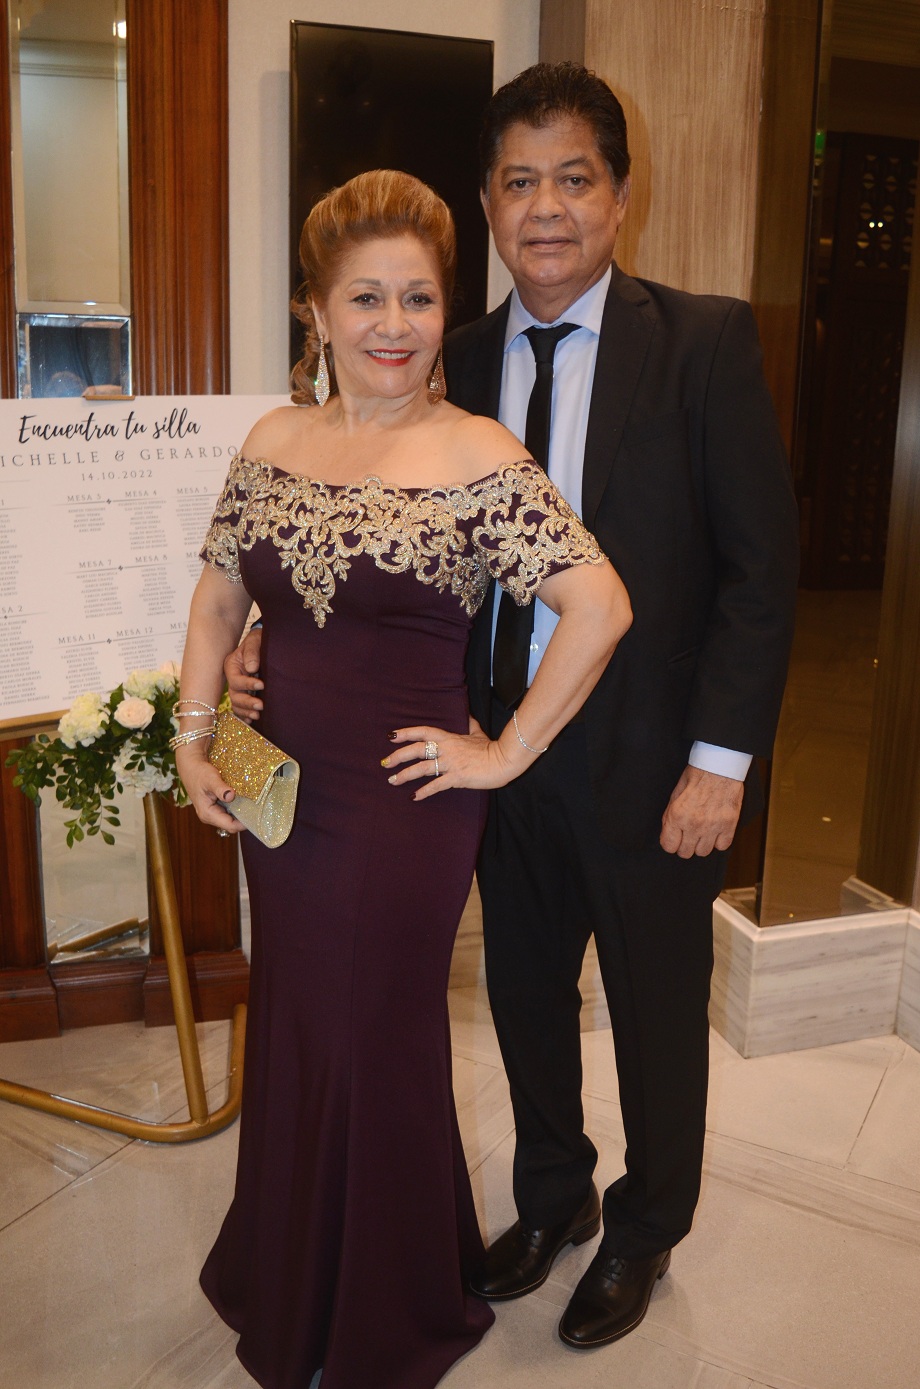 La boda de Michelle Buendía y Gerardo Elvir… una gran velada llena de amor